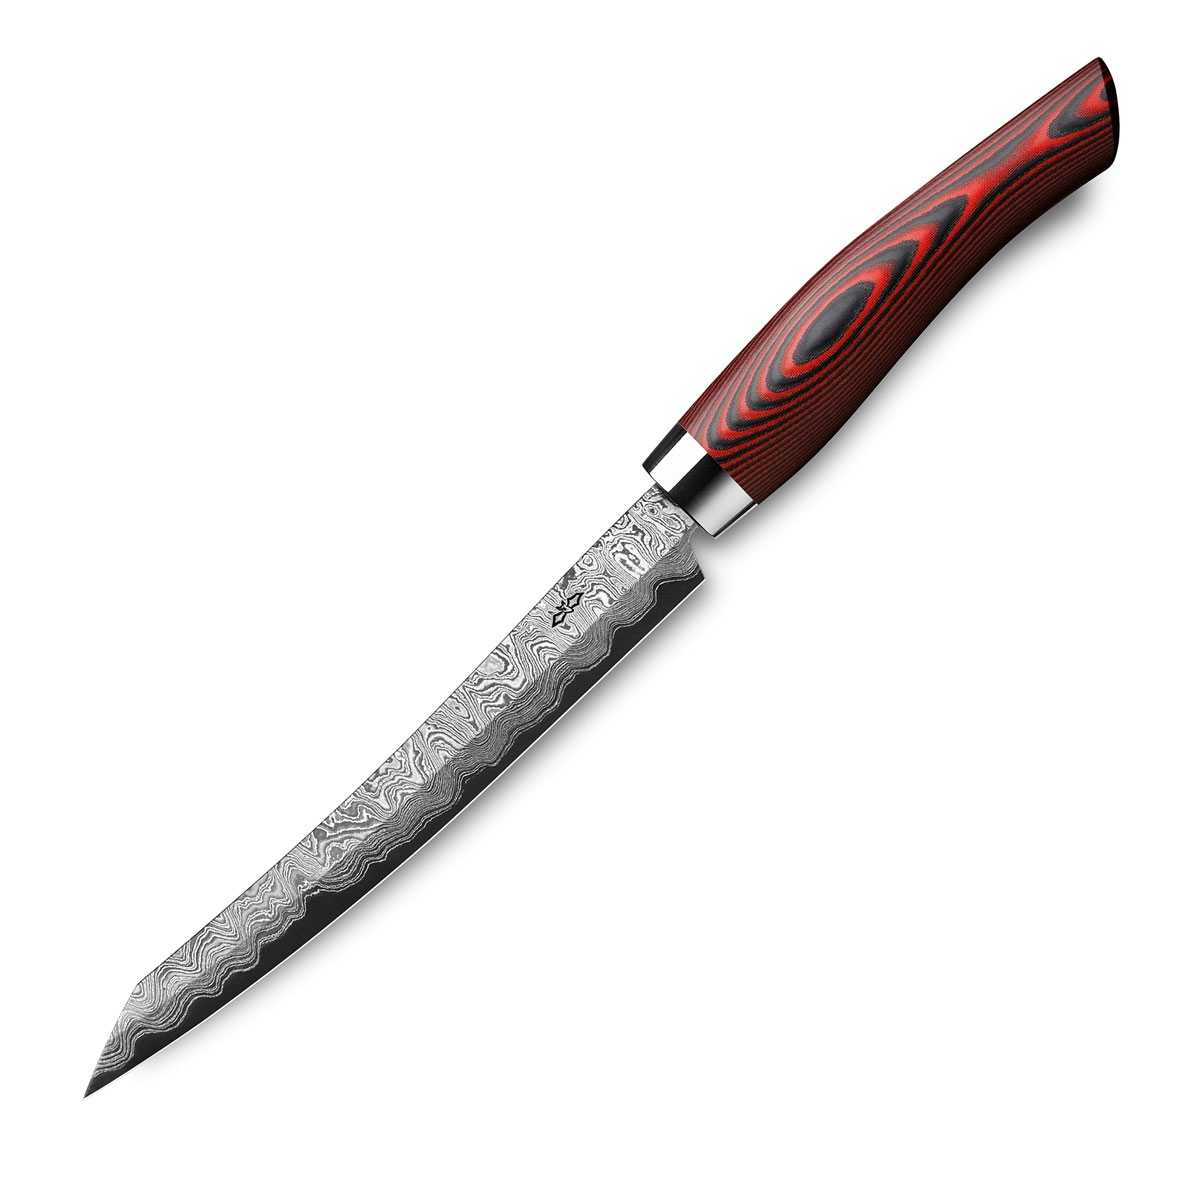 Nesmuk Exklusiv C150 Damast Slicer 16 cm mit Schneidlage / Griff aus rotem Micarta